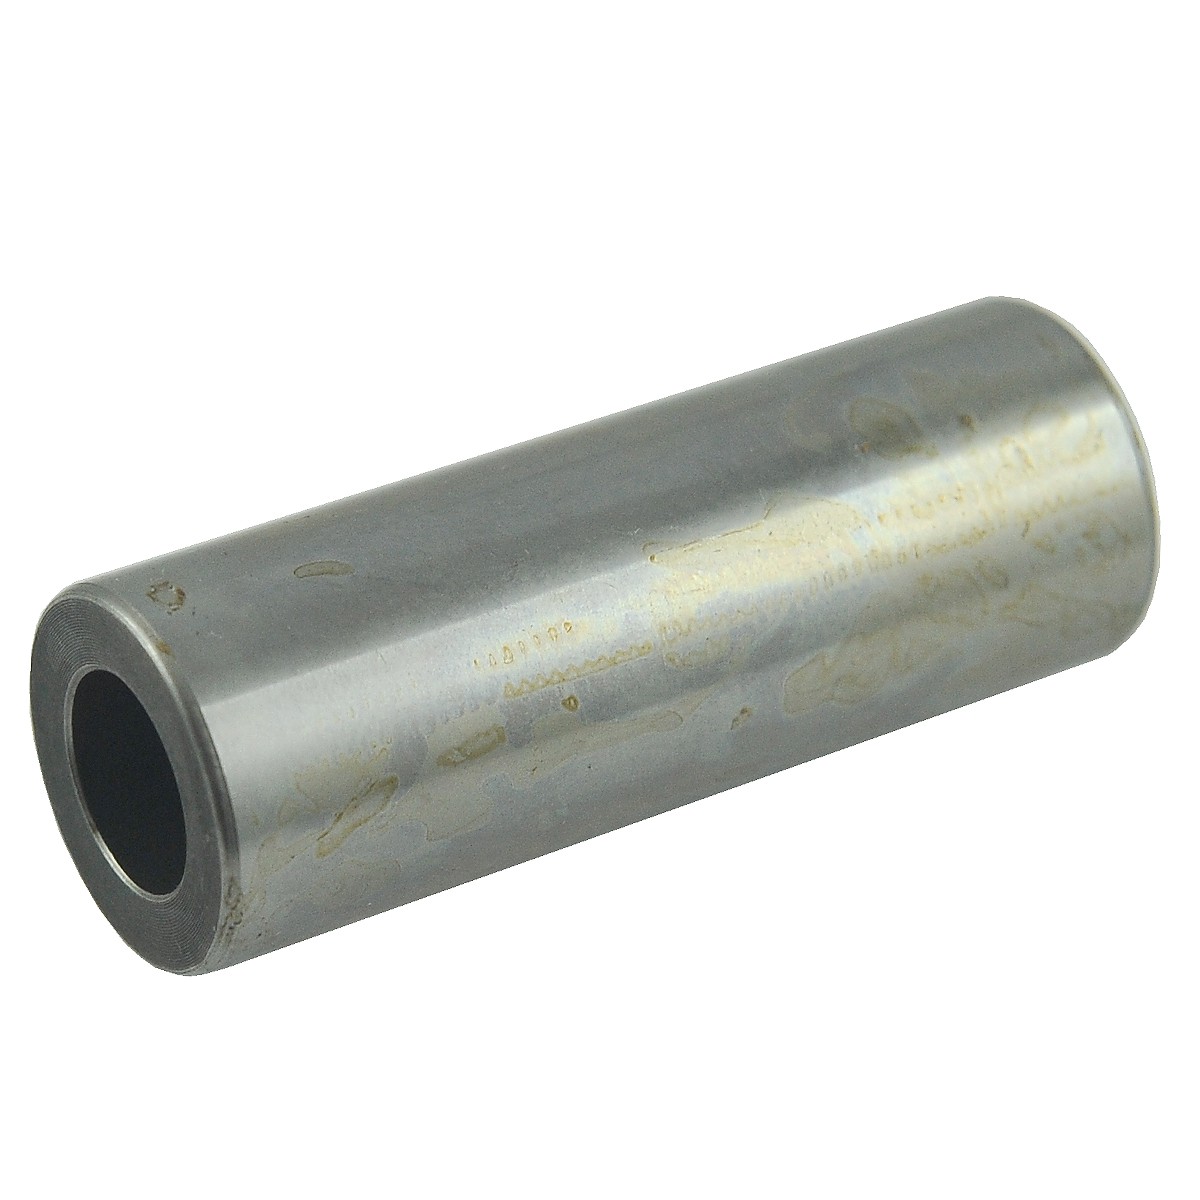 Piston pin / Ø 23 x 62 mm / Kubota DH1100/DH1101/V1502/Z750 / 15221-21110 / 6-25-120-02